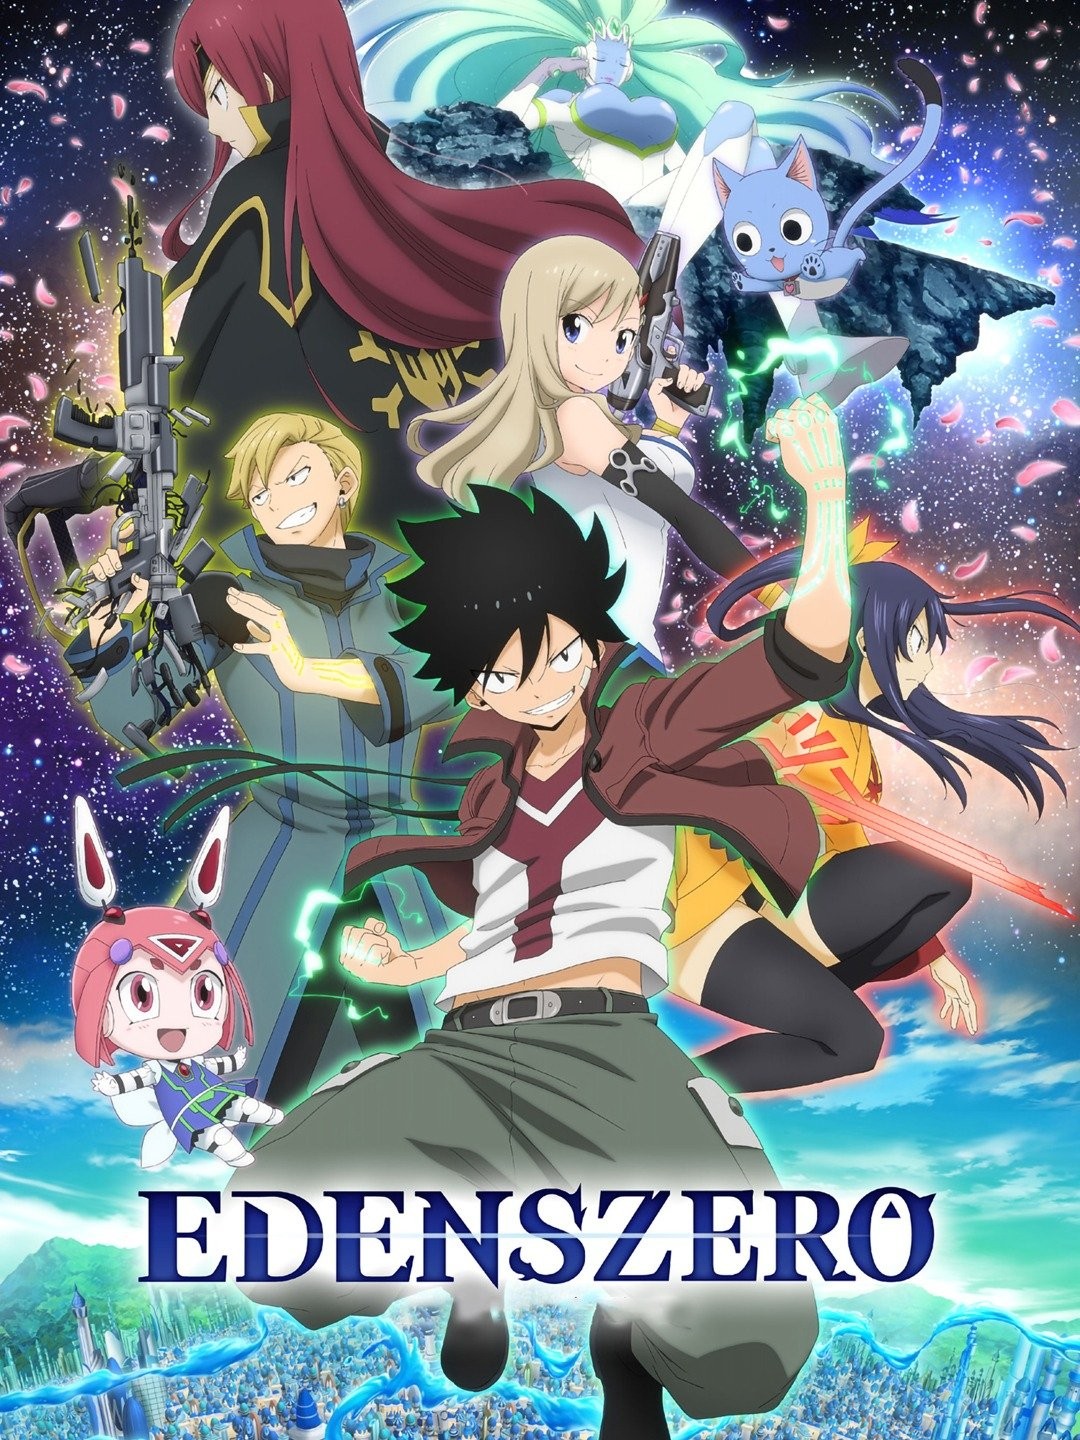 Edens Zero' Season 2 on Netflix: Everything We Know So Far